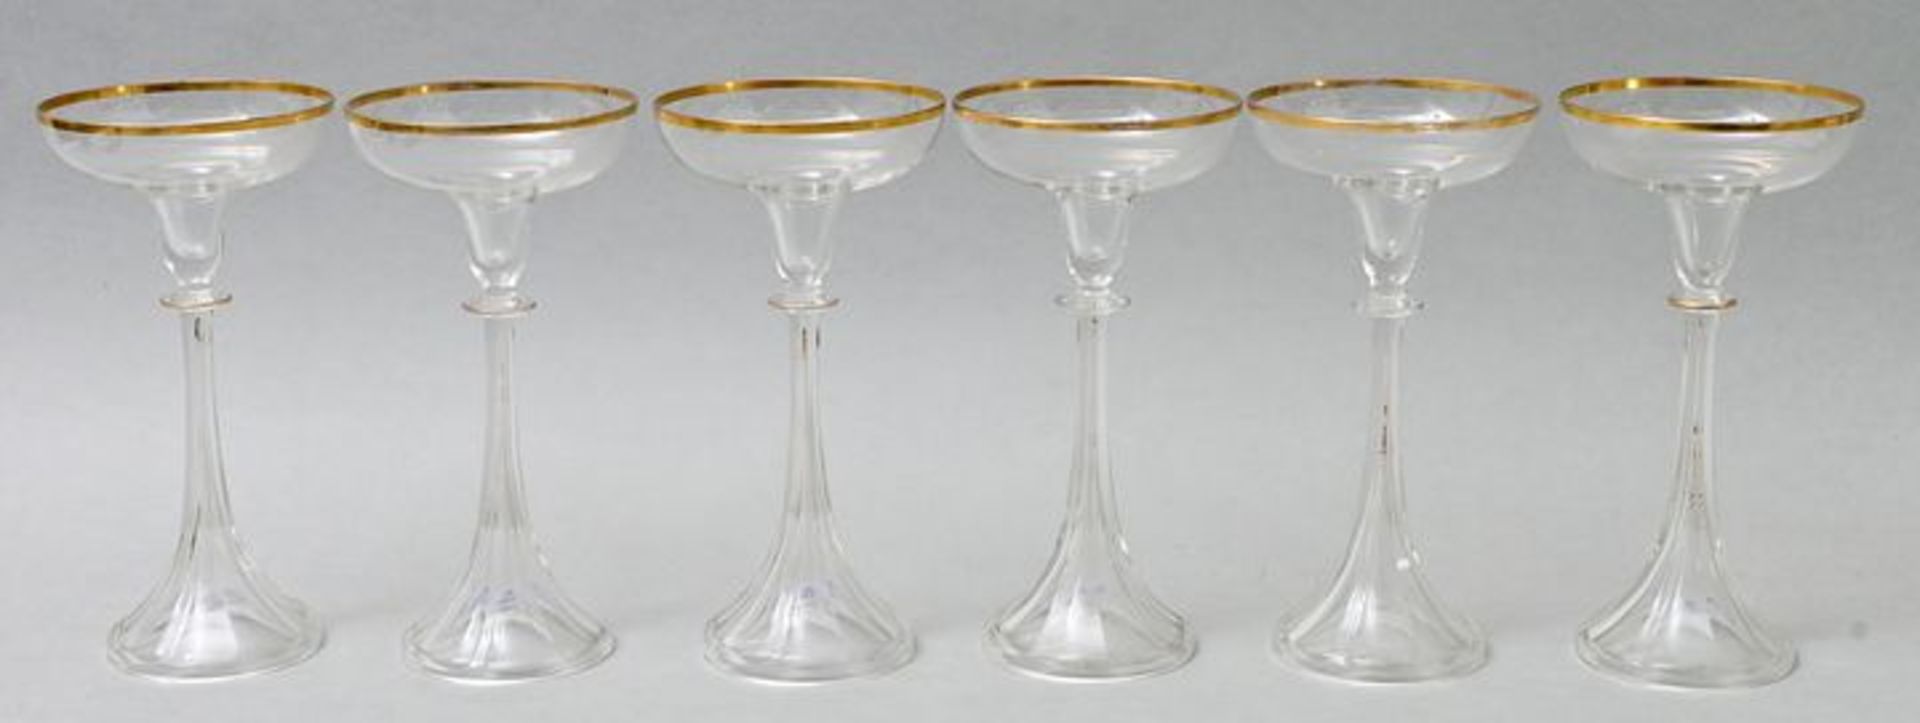 Jugendstil-Sektschalen/ champagne glasses